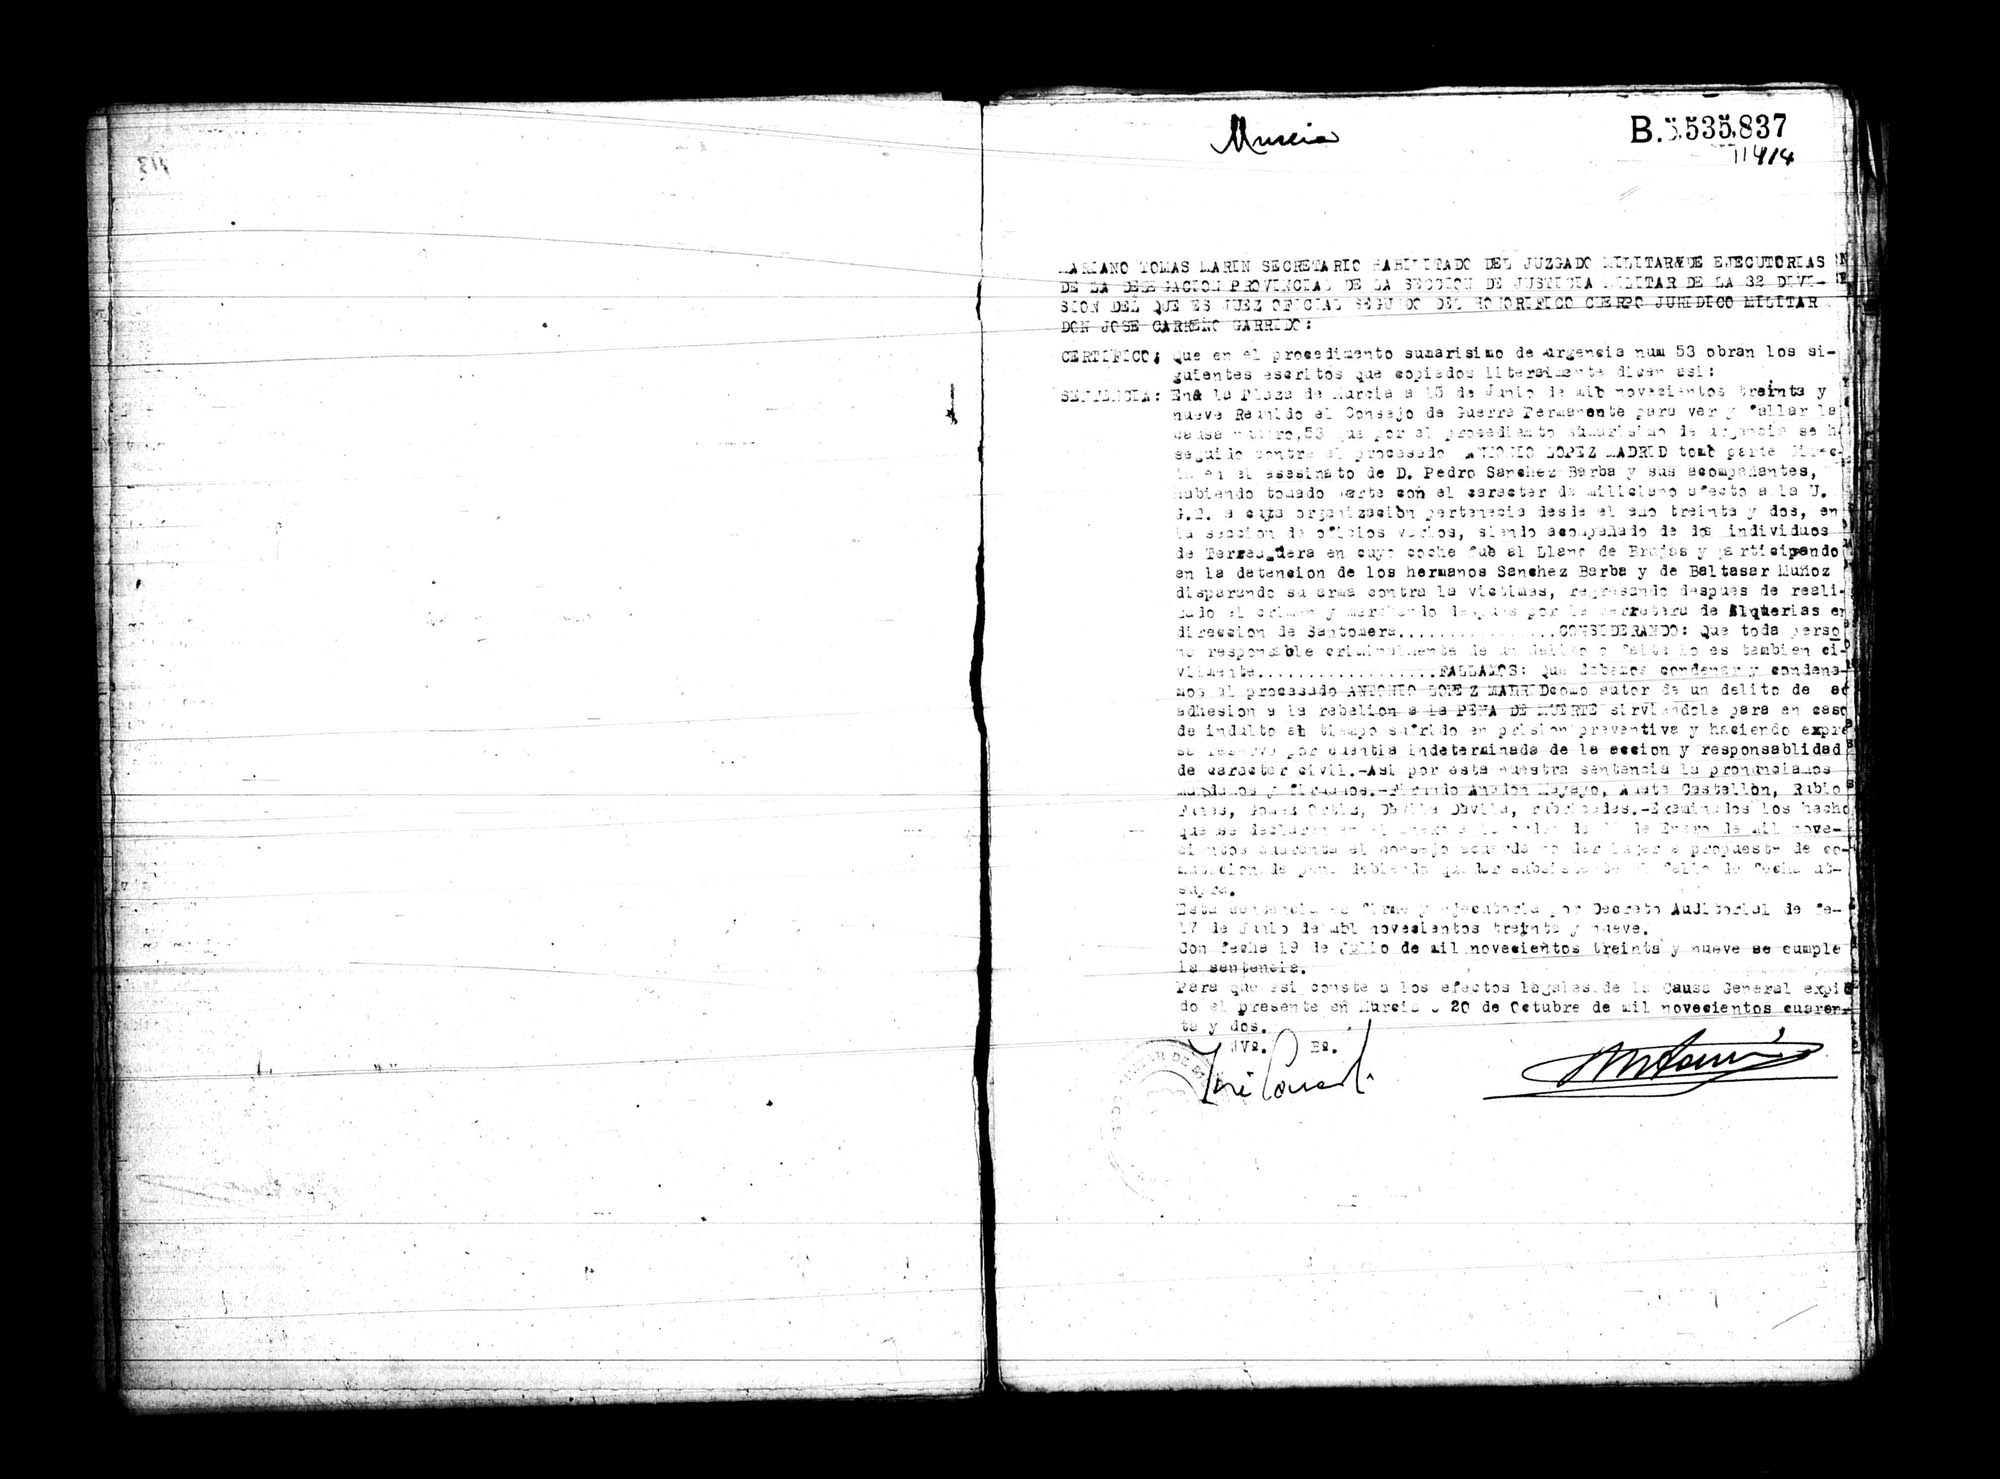 Certificado de la sentencia pronunciada contra Antonio López Madrid, causa 53, el 15 de junio de 1939 en Murcia.